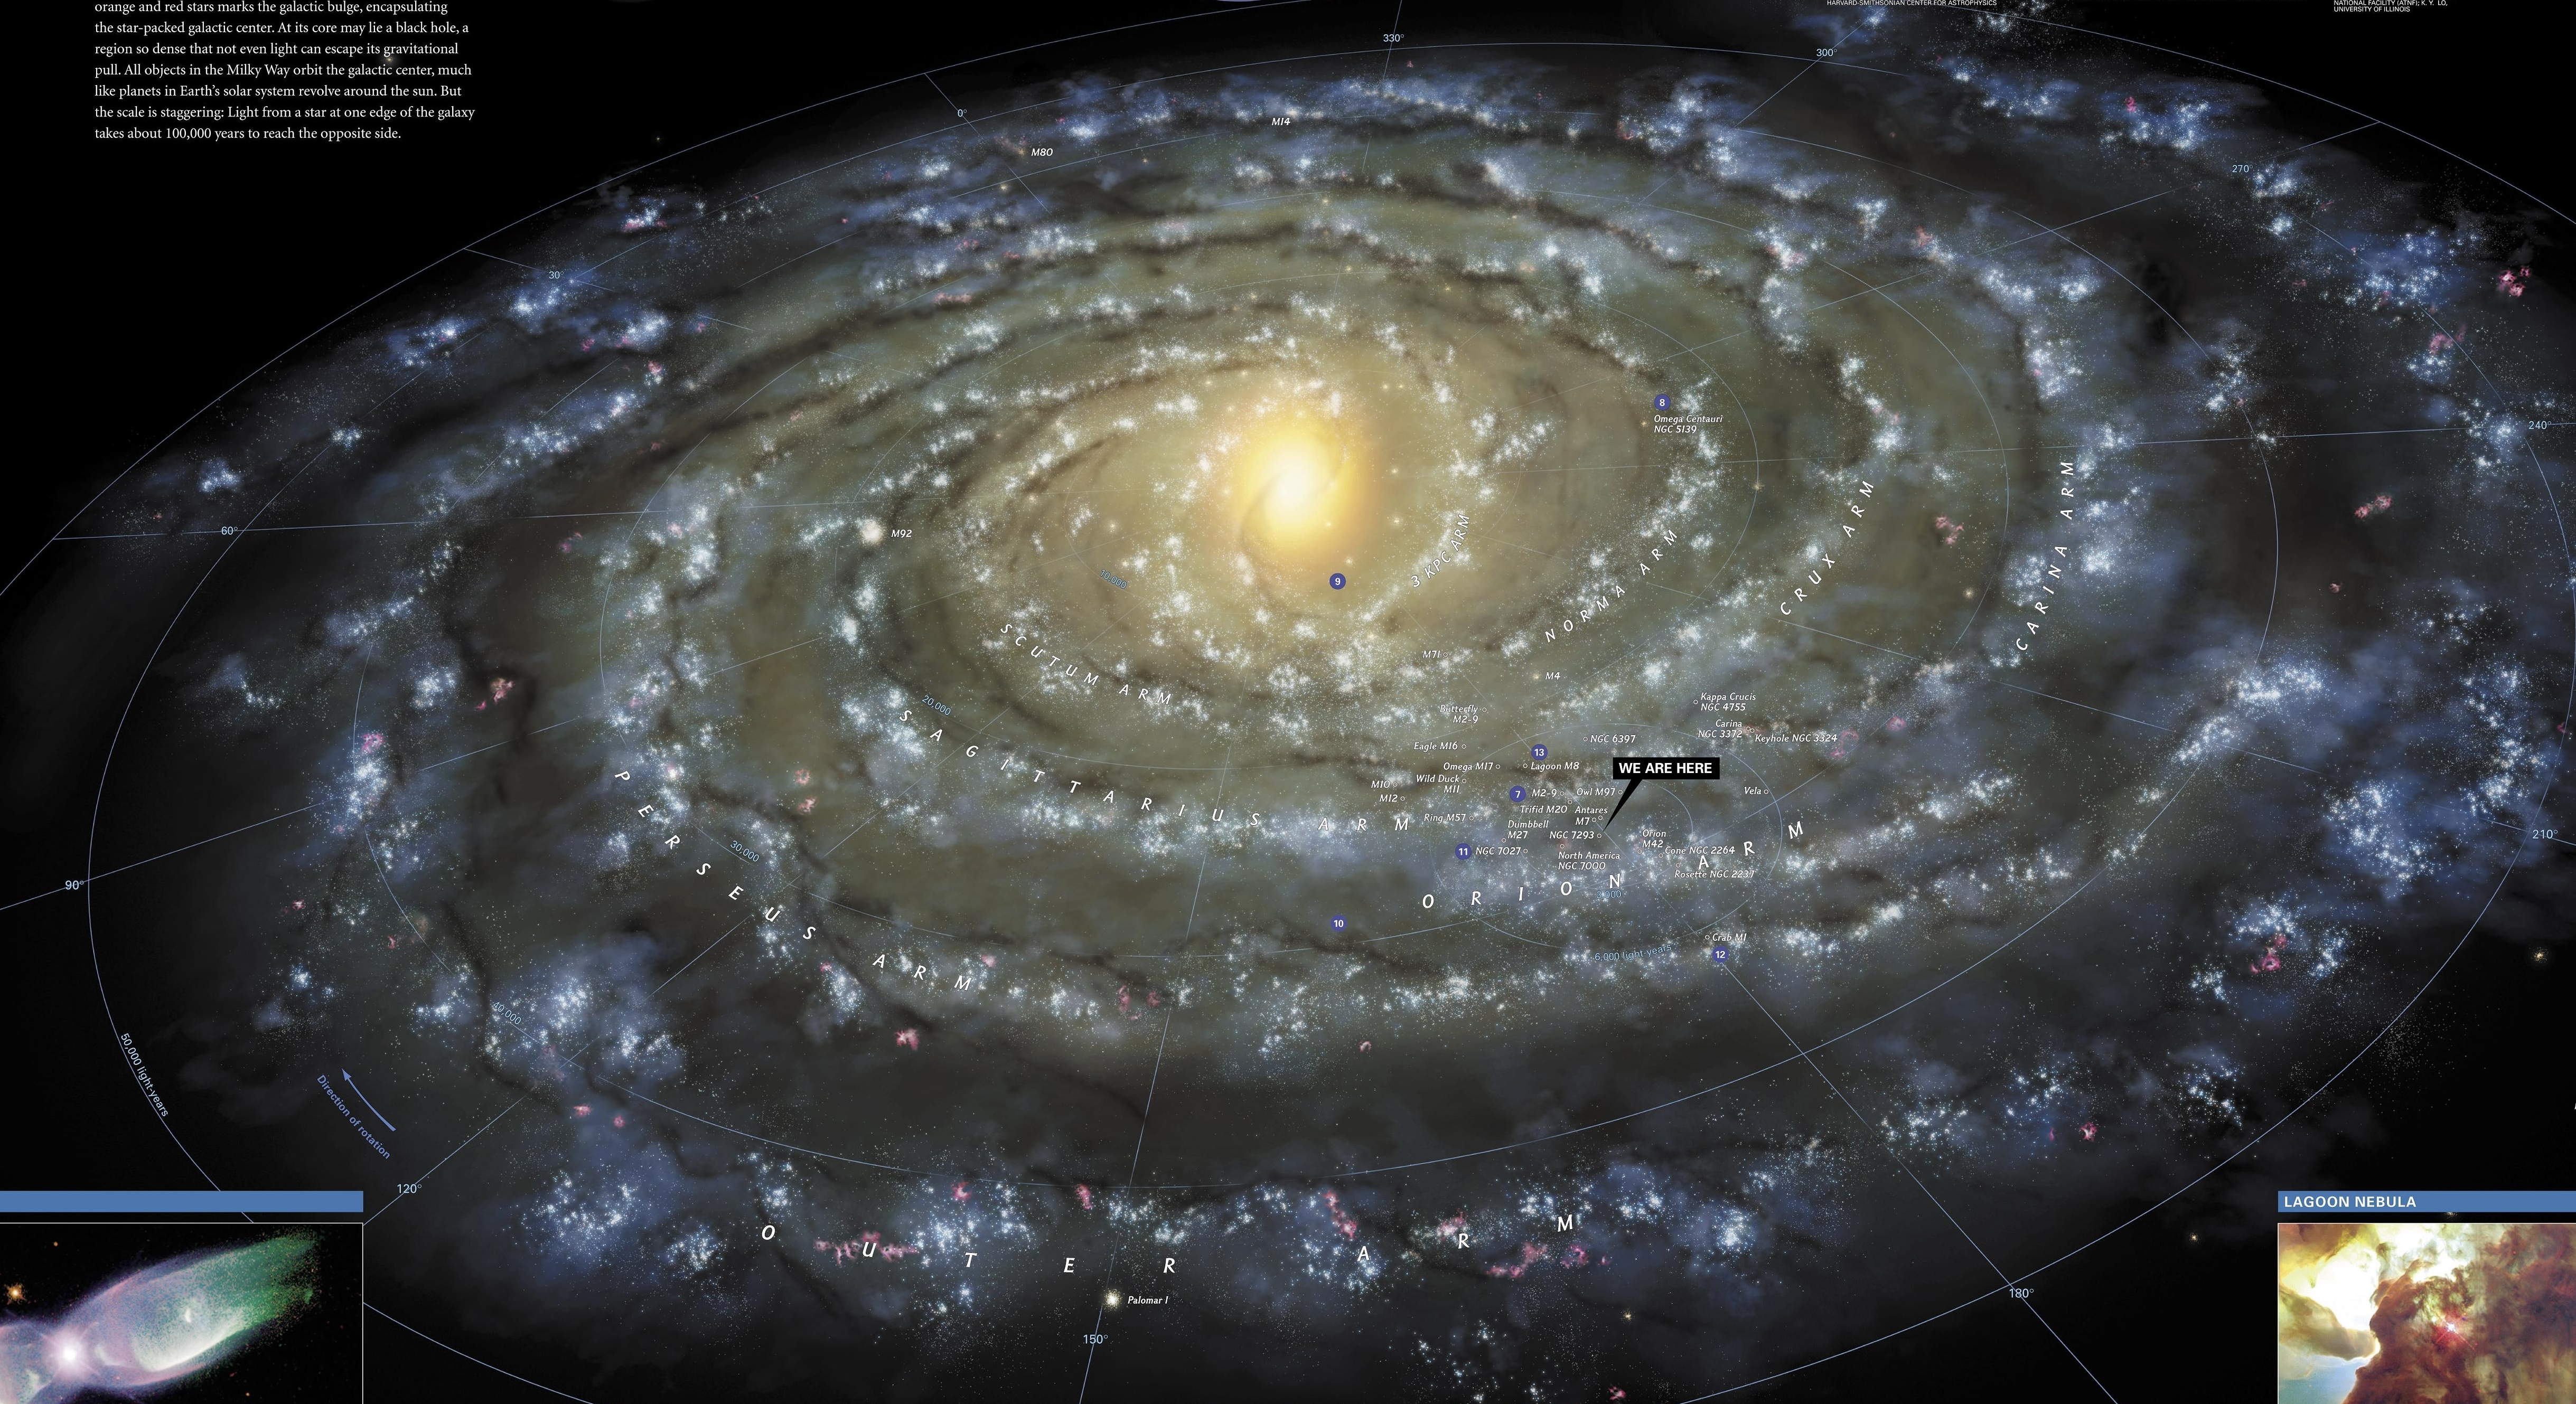 1 му земли. Солнечная система на карте Галактики Млечный путь. Звездная карта Галактики Млечный путь. Галактика Млечный путь планеты солнечной системы.